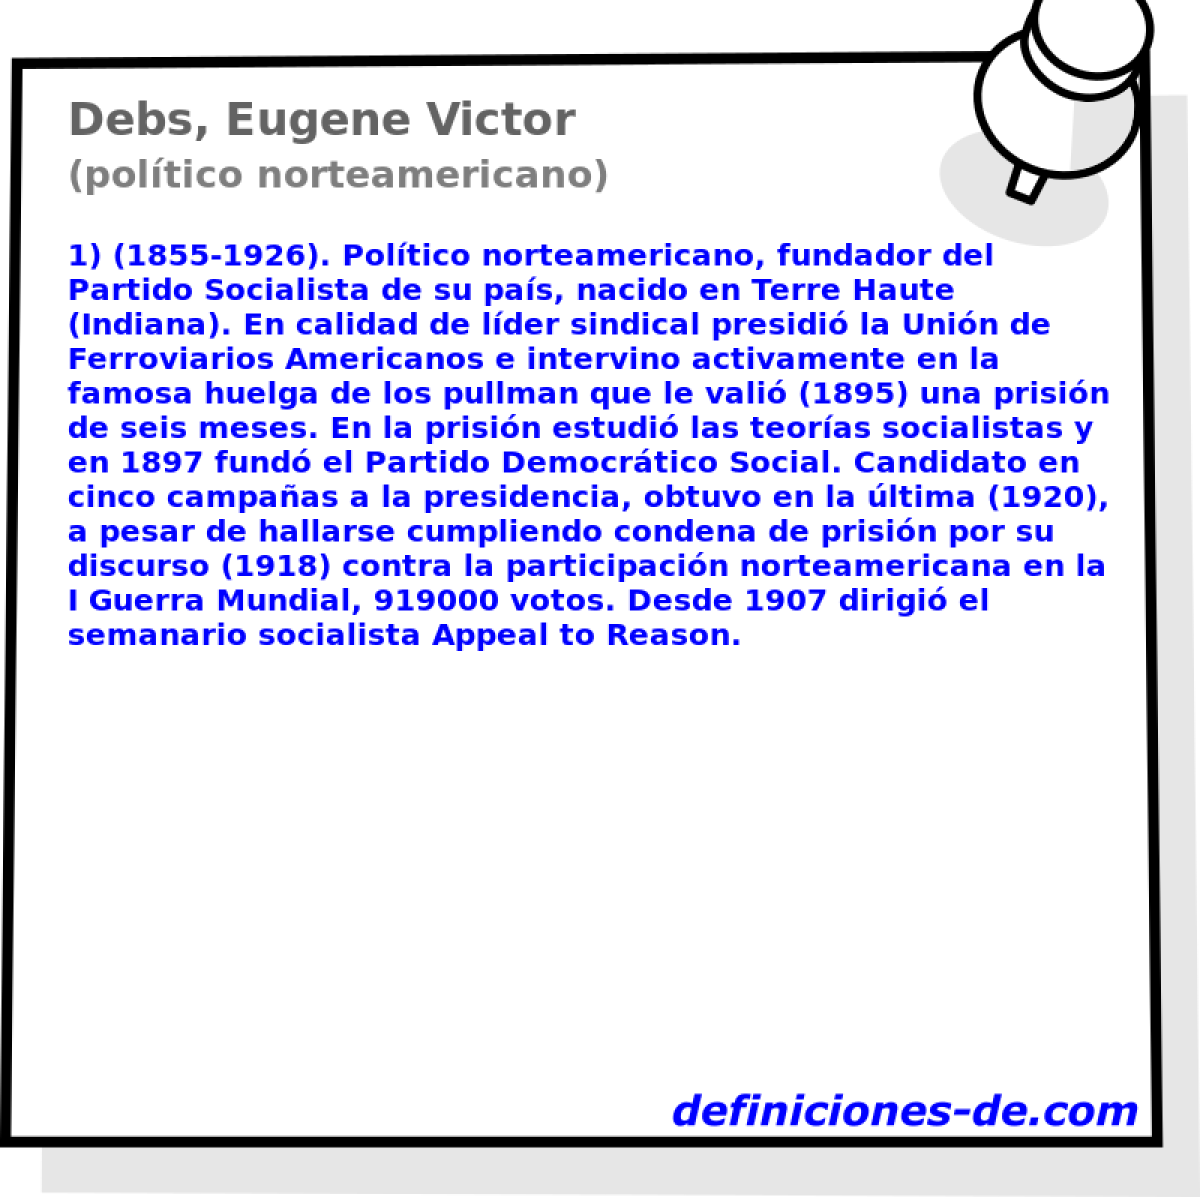 Debs, Eugene Victor (poltico norteamericano)